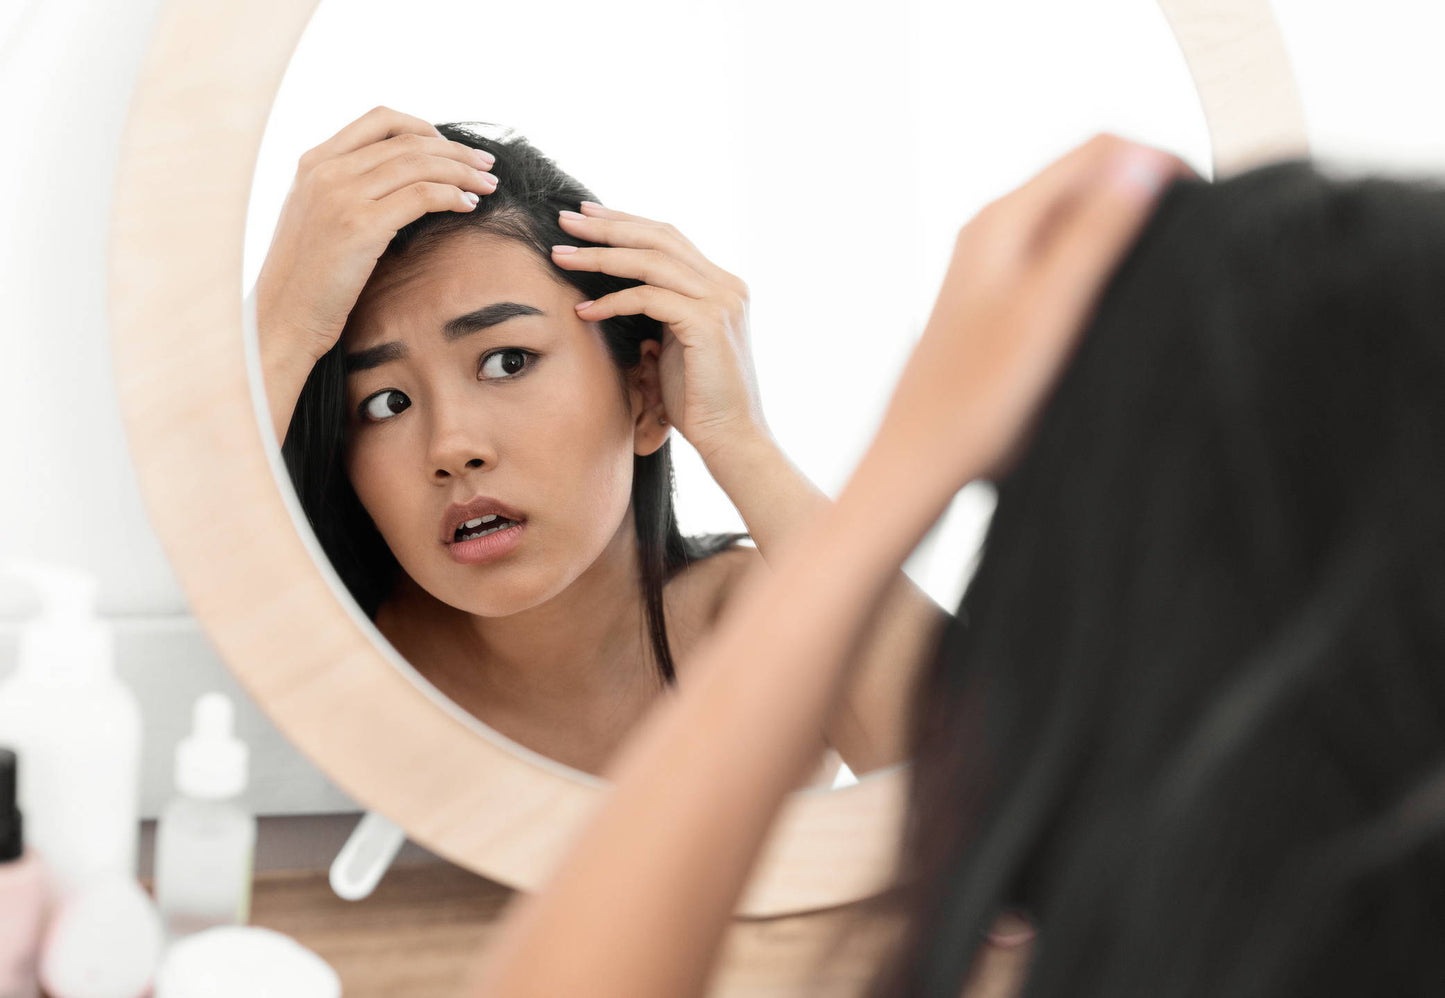 Six Autoimmune Diseases That Cause Hair Loss